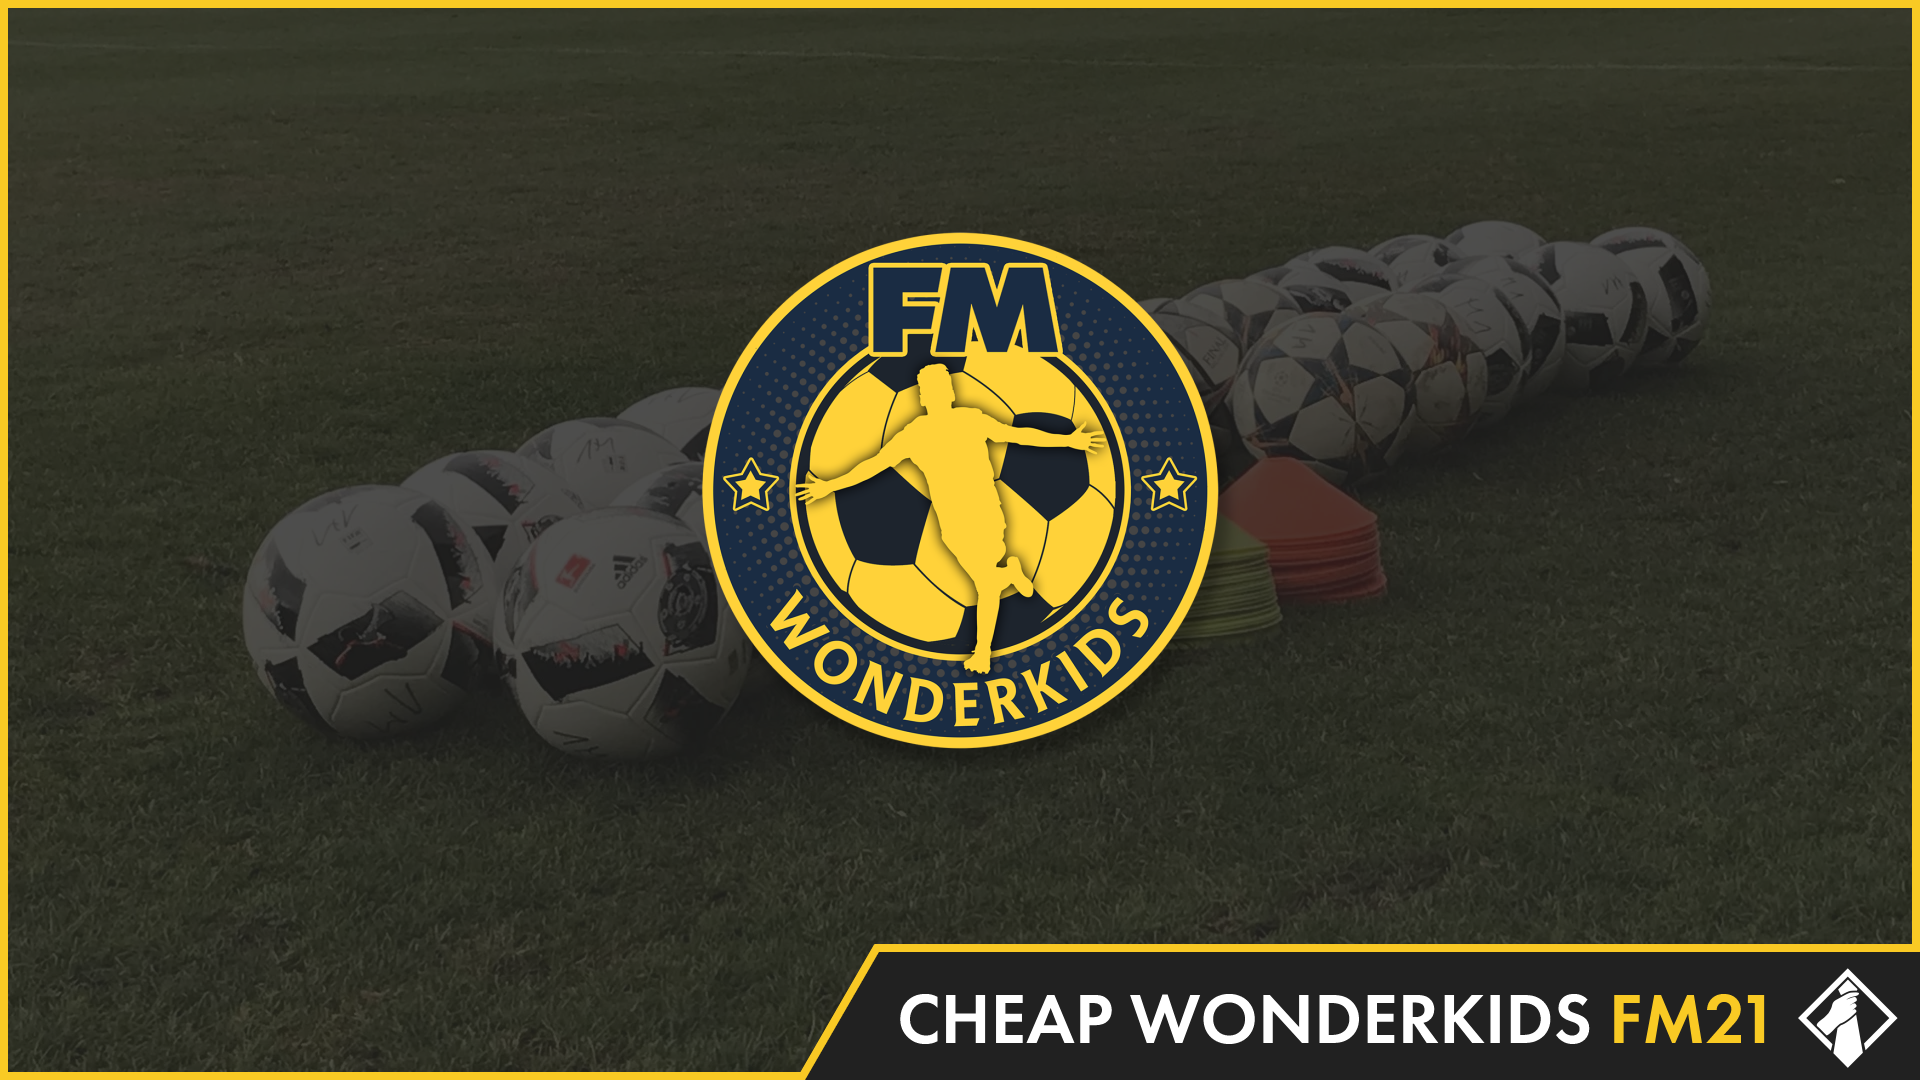 FM21: Cheap Wonderkids by FM Wonderkids